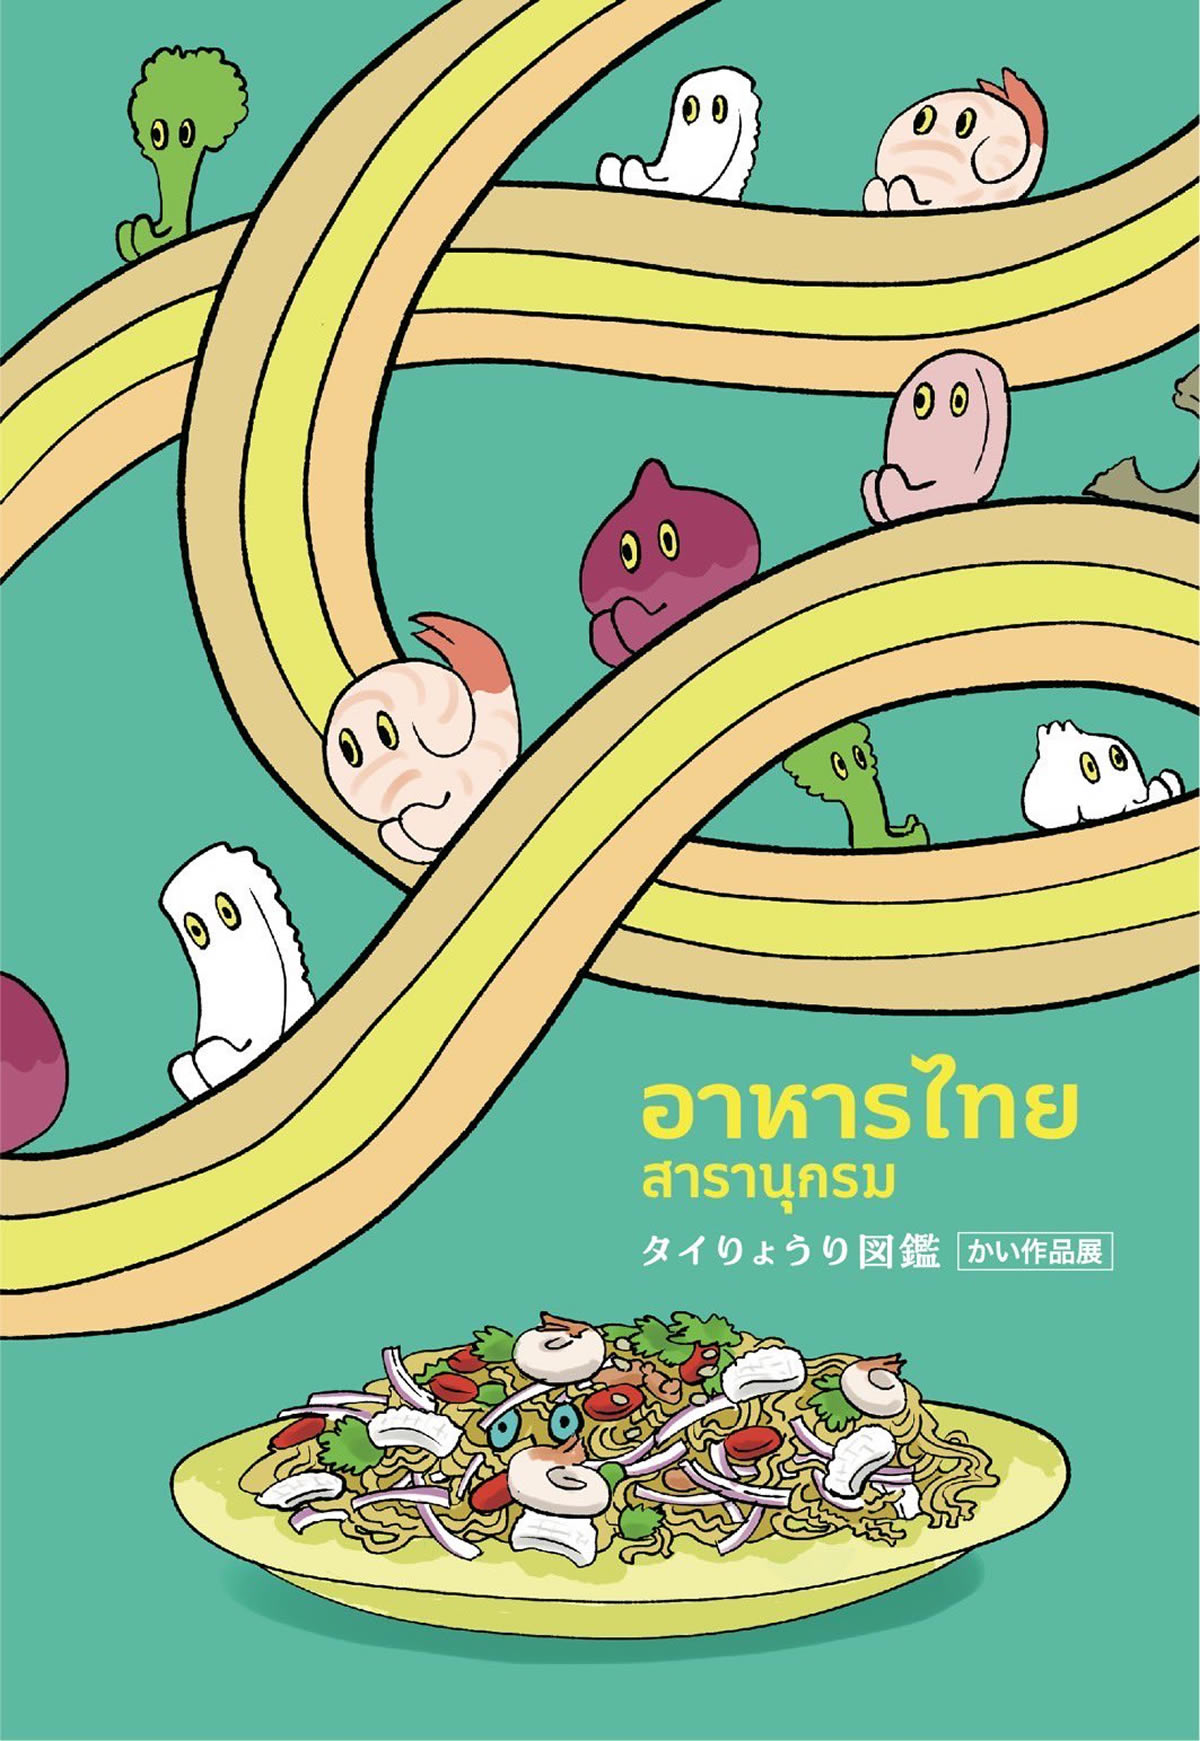 タイ料理イラスト個展『タイりょうり図鑑 かい作品展』が東京・南青山で開催、入場無料